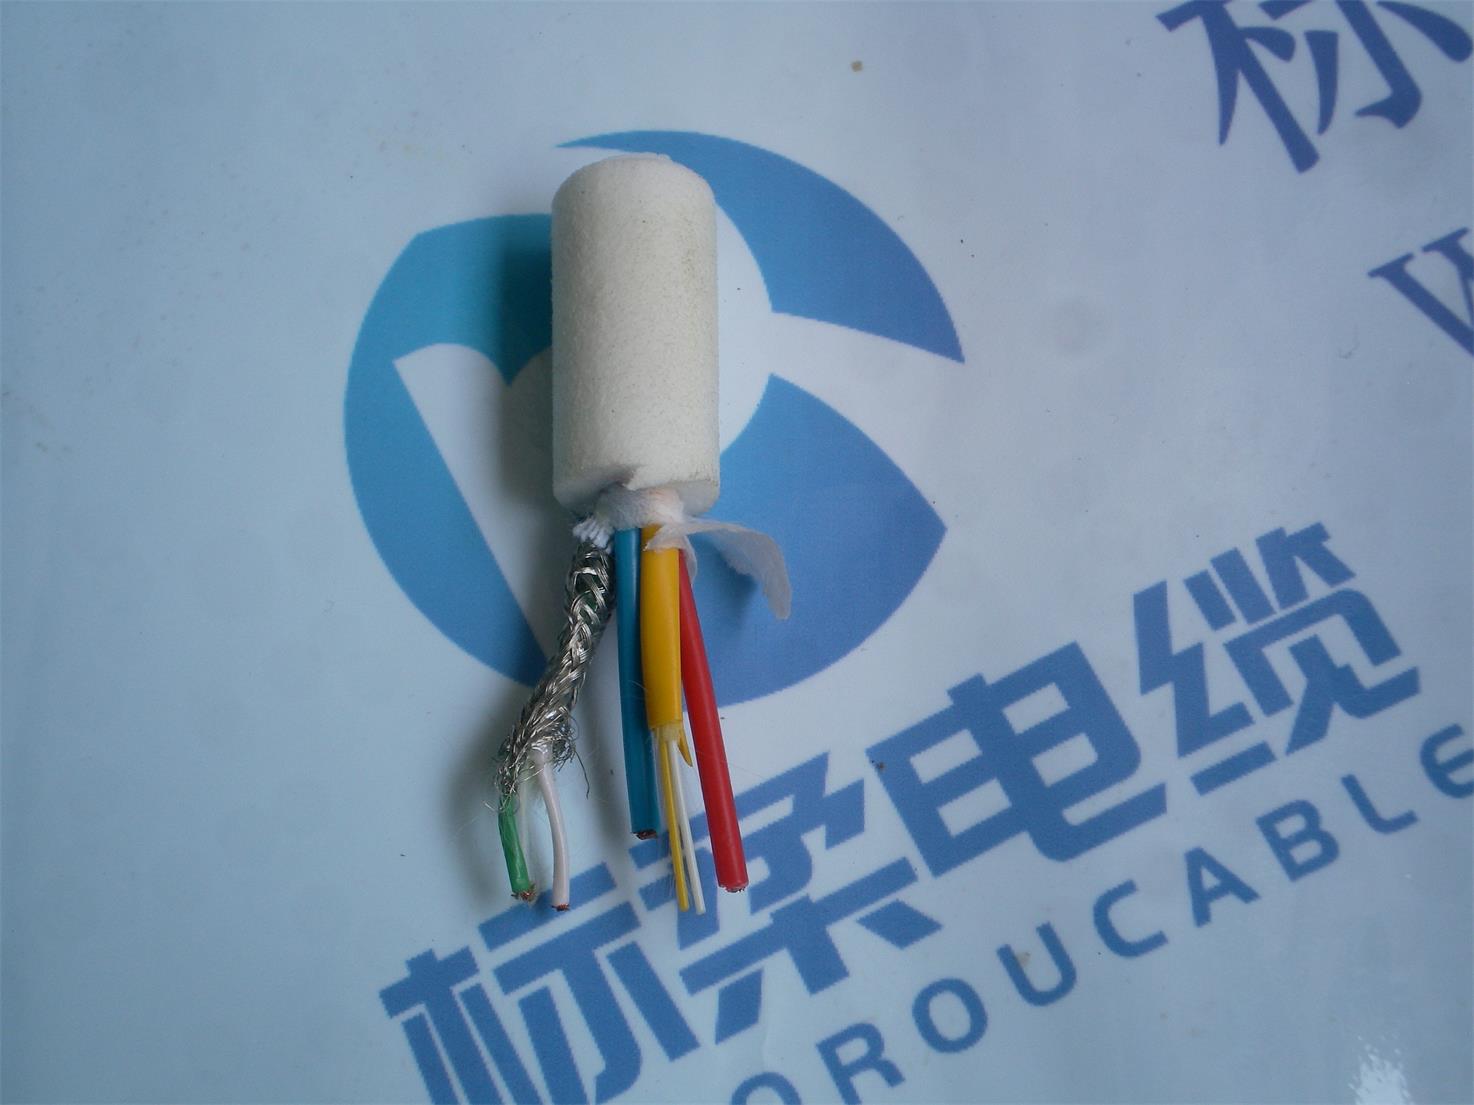 水密电缆 漂浮电缆水密电缆 漂浮电缆 上海标柔电缆厂生产厂家直销上海漂浮电缆厂家